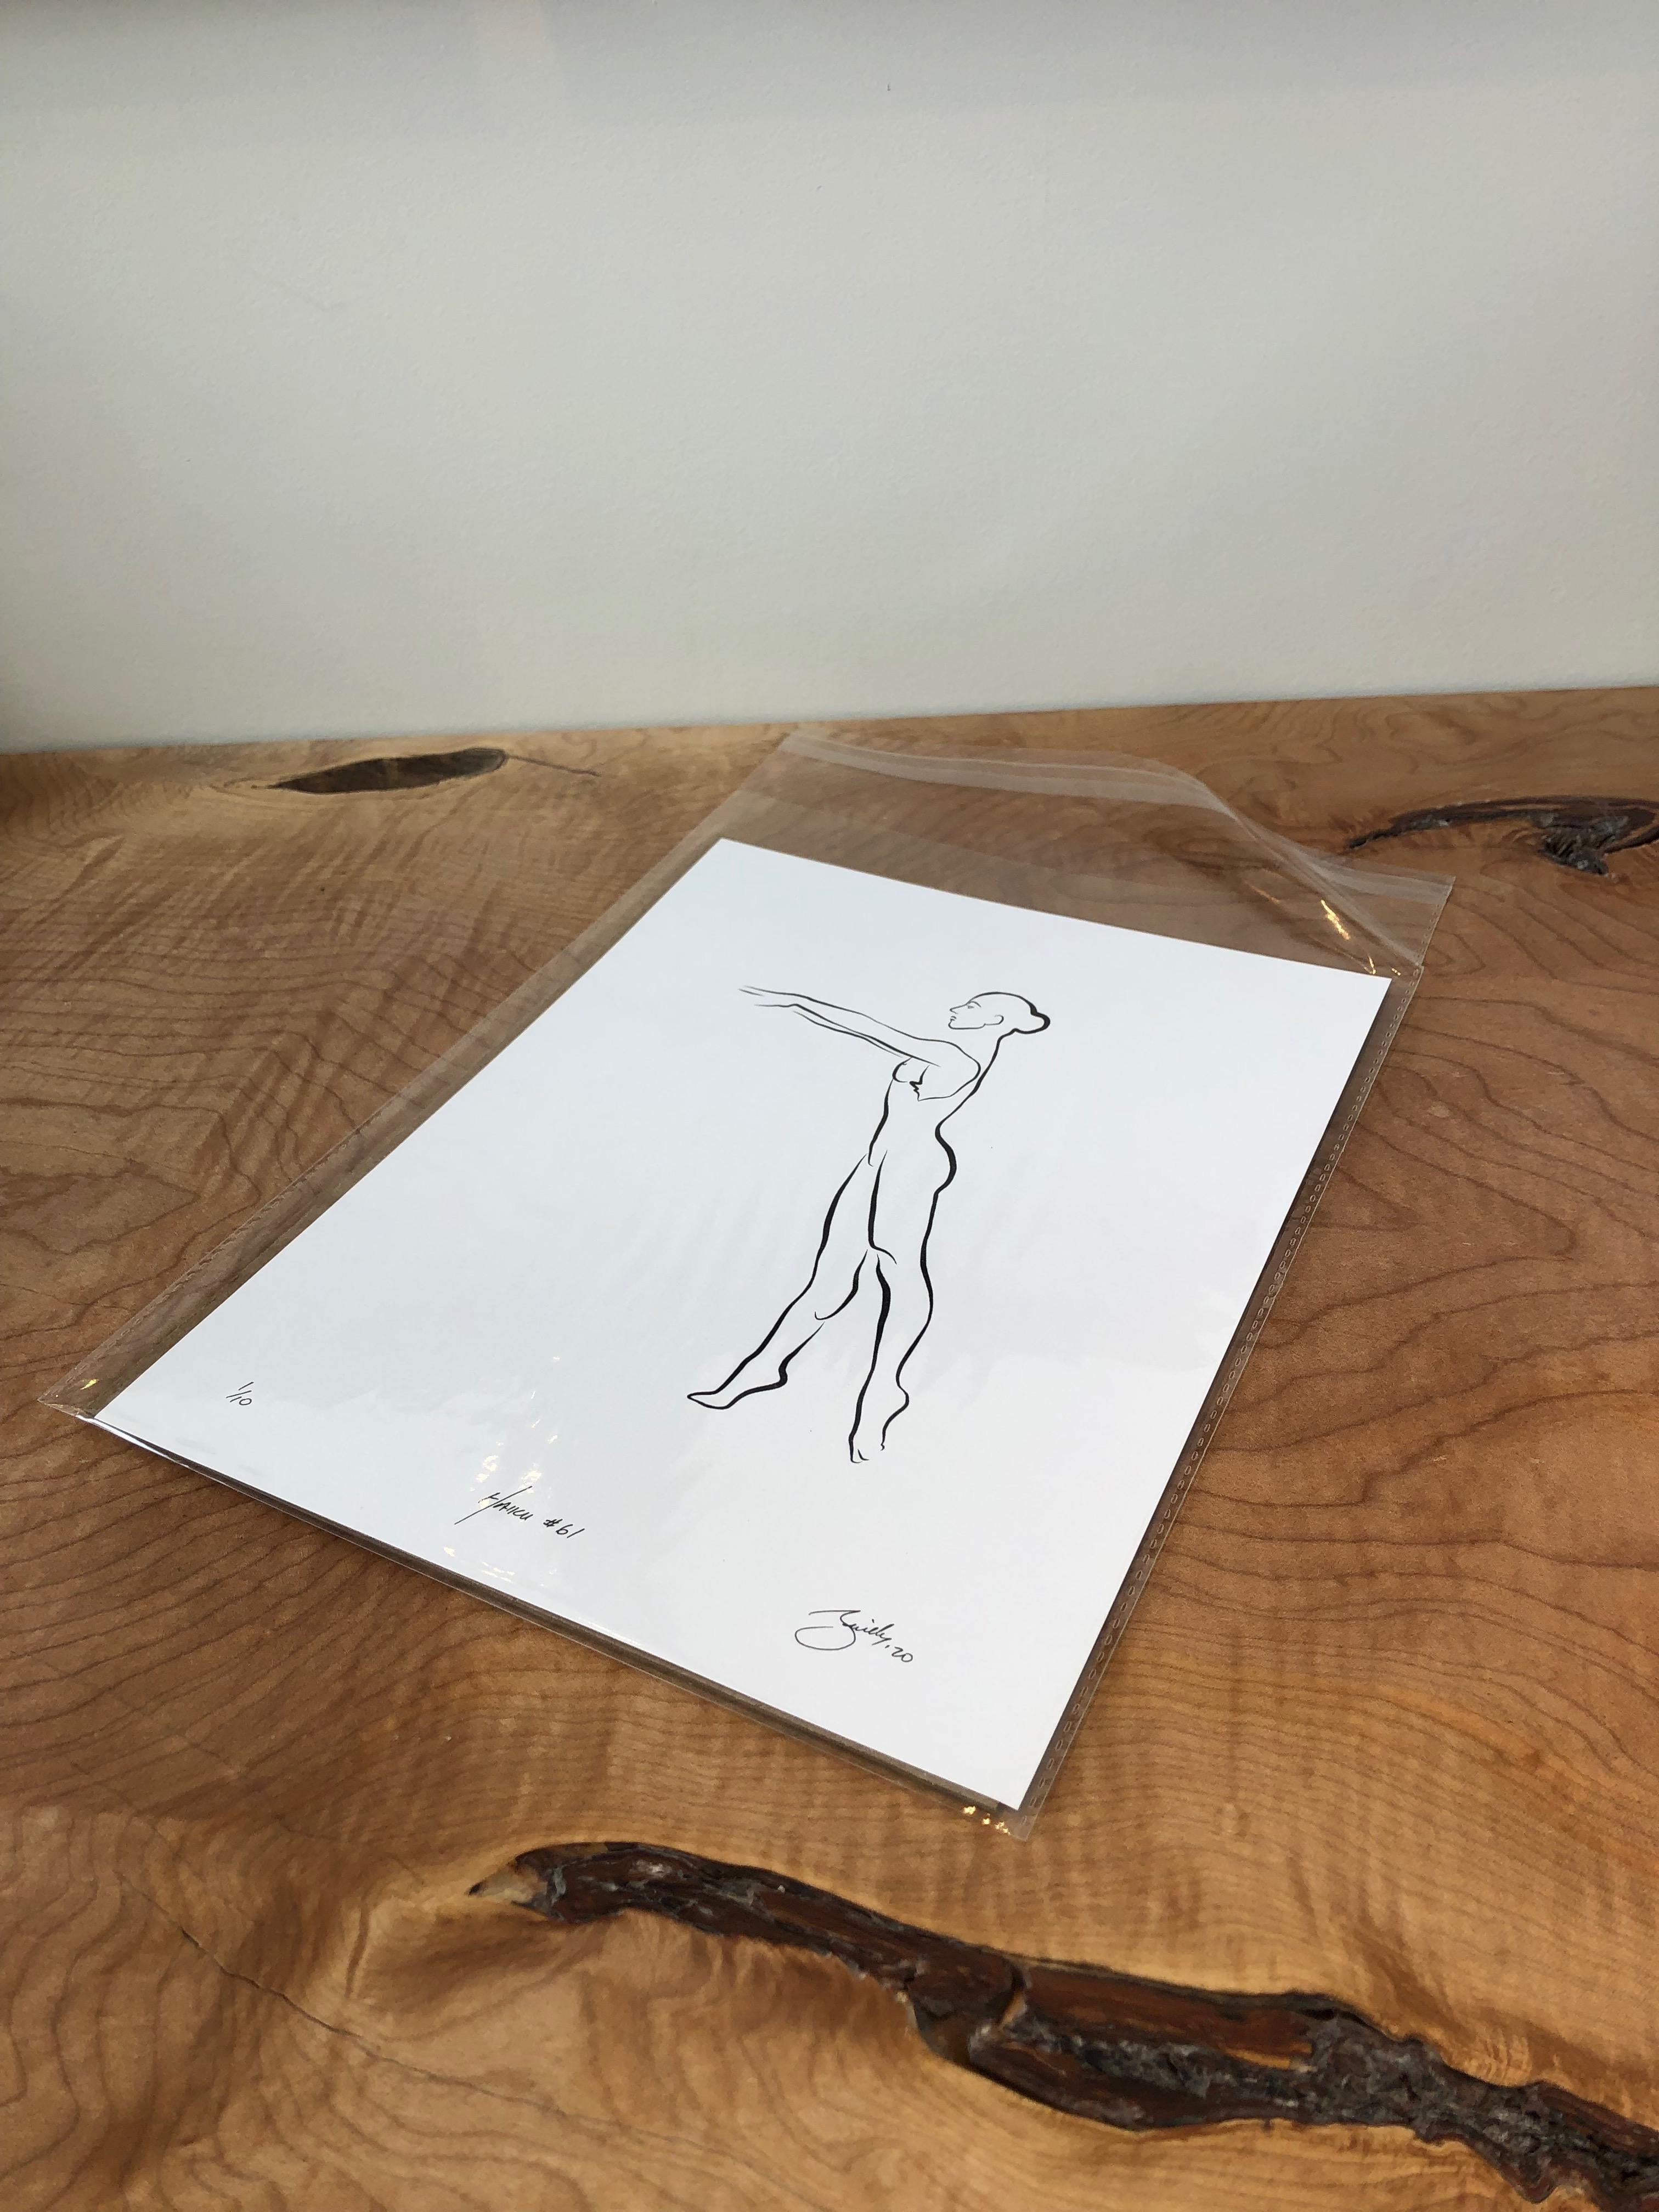 Haiku #61, 1/50 - Digital Vector Drawing B&W Female Nude Standing Tiptoe - Print by Michael Binkley